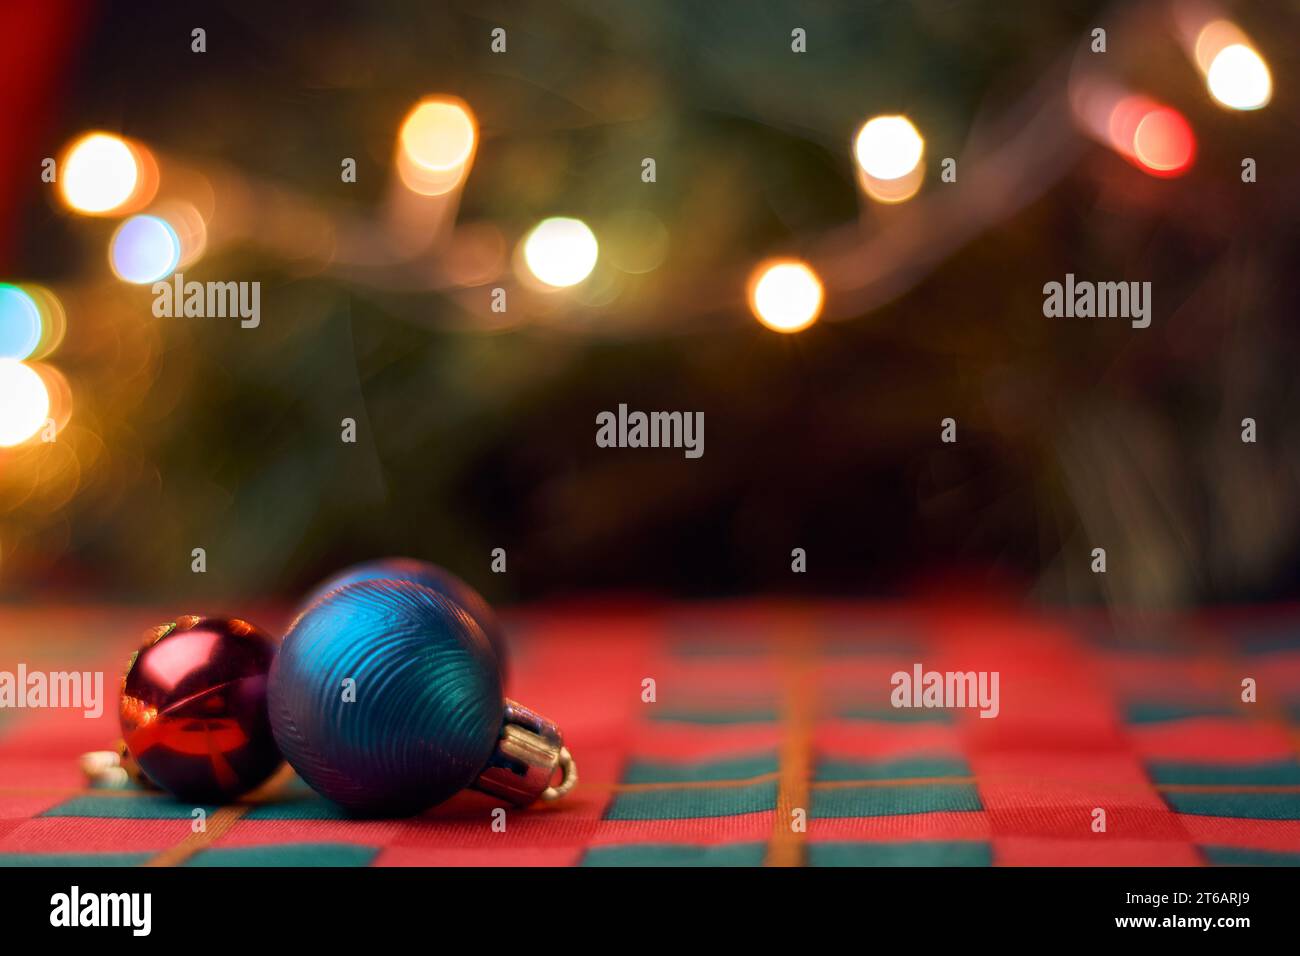 Sfondo natalizio orizzontale con palle natalizie sul tavolo con tovaglia verde e rossa, albero di Natale sfocato e luci. Spazio di copia per il testo. Foto Stock